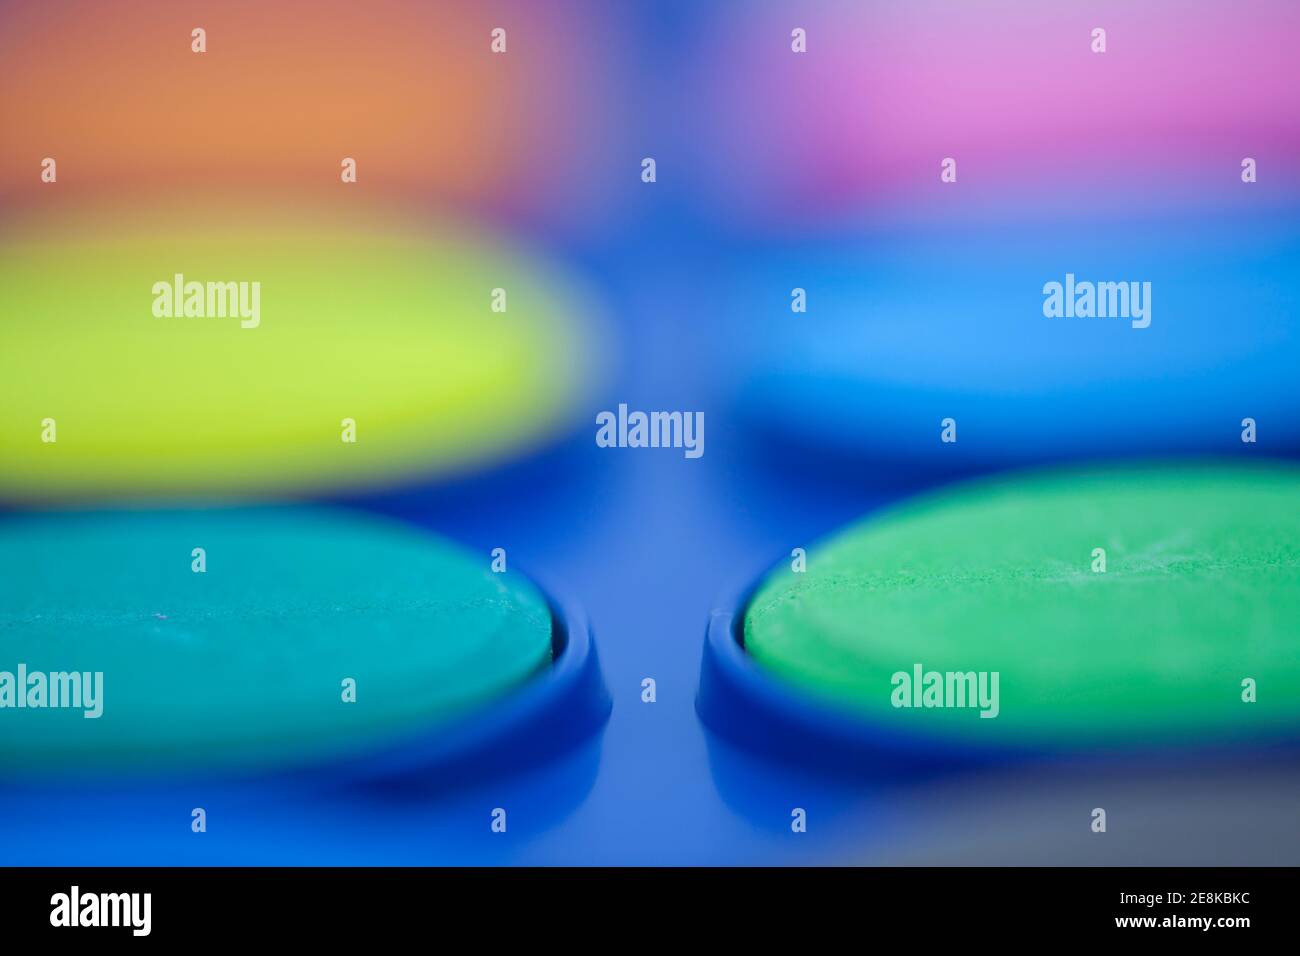 immagine astratta della tavolozza dei colori con sfondo sfocato Foto Stock